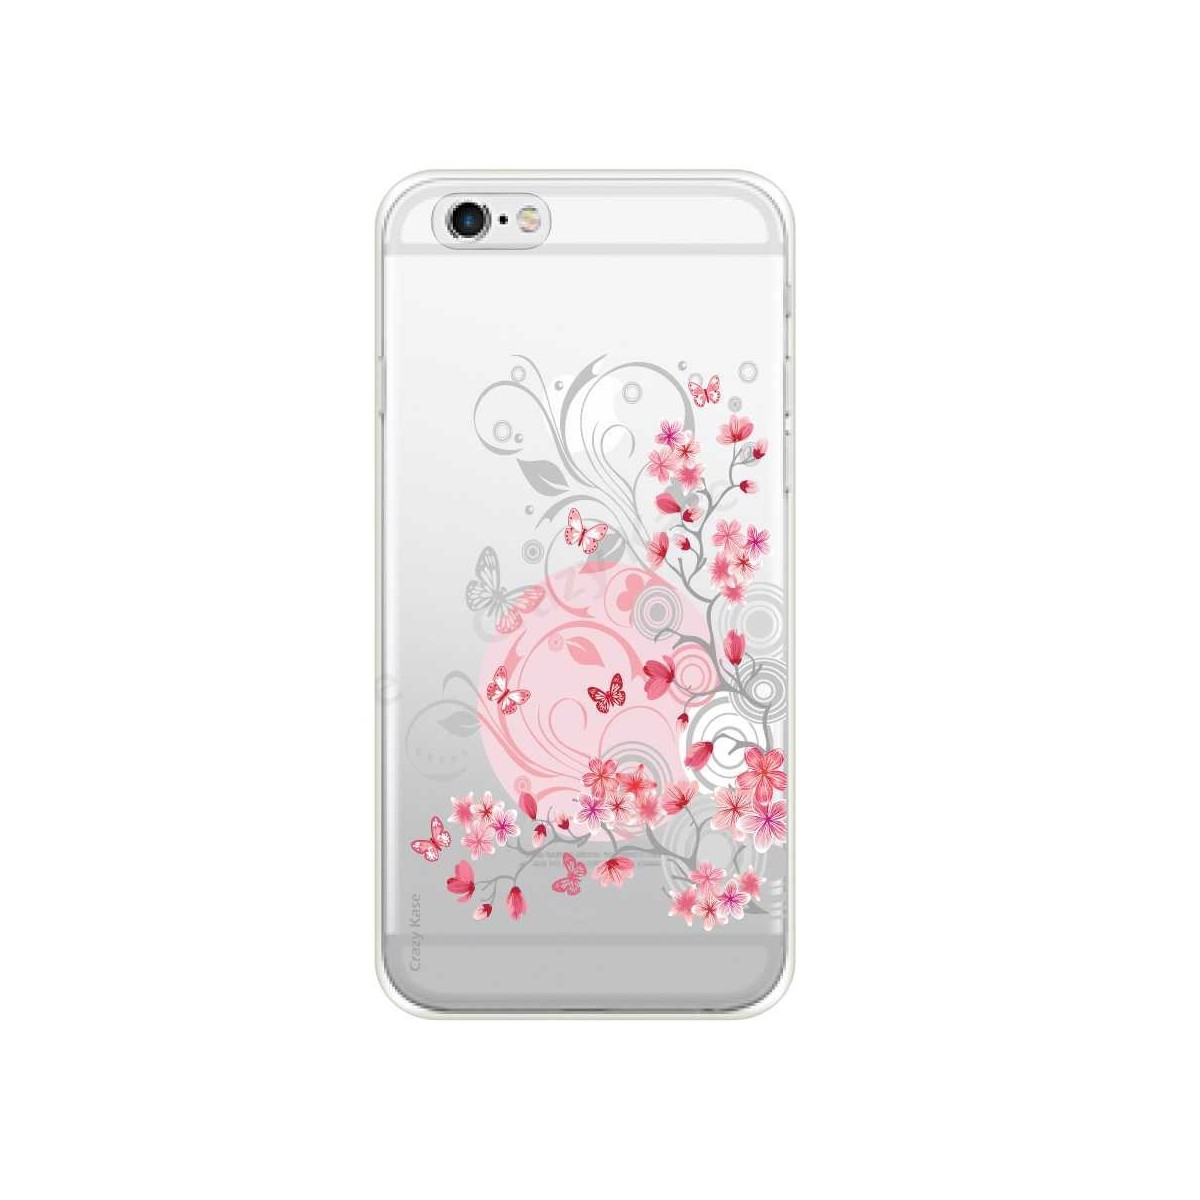 Coque iPhone 6 / 6s Plus souple Fleurs et papillons - Crazy Kase